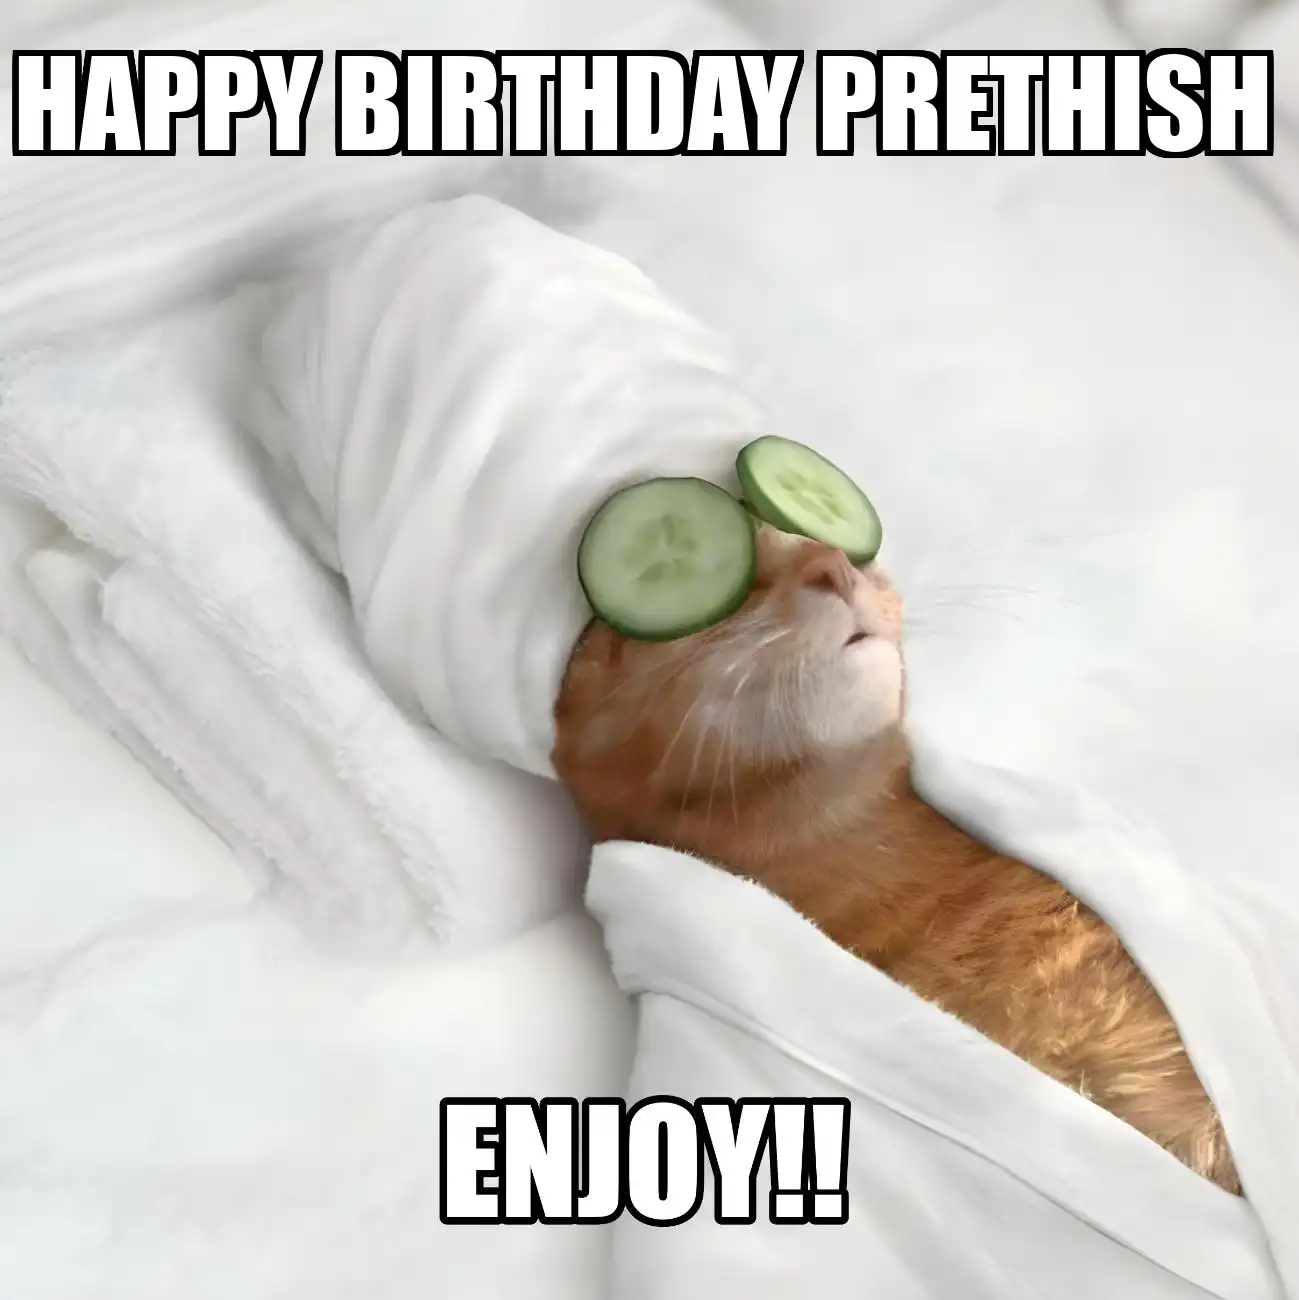 Happy Birthday Prethish Enjoy Cat Meme